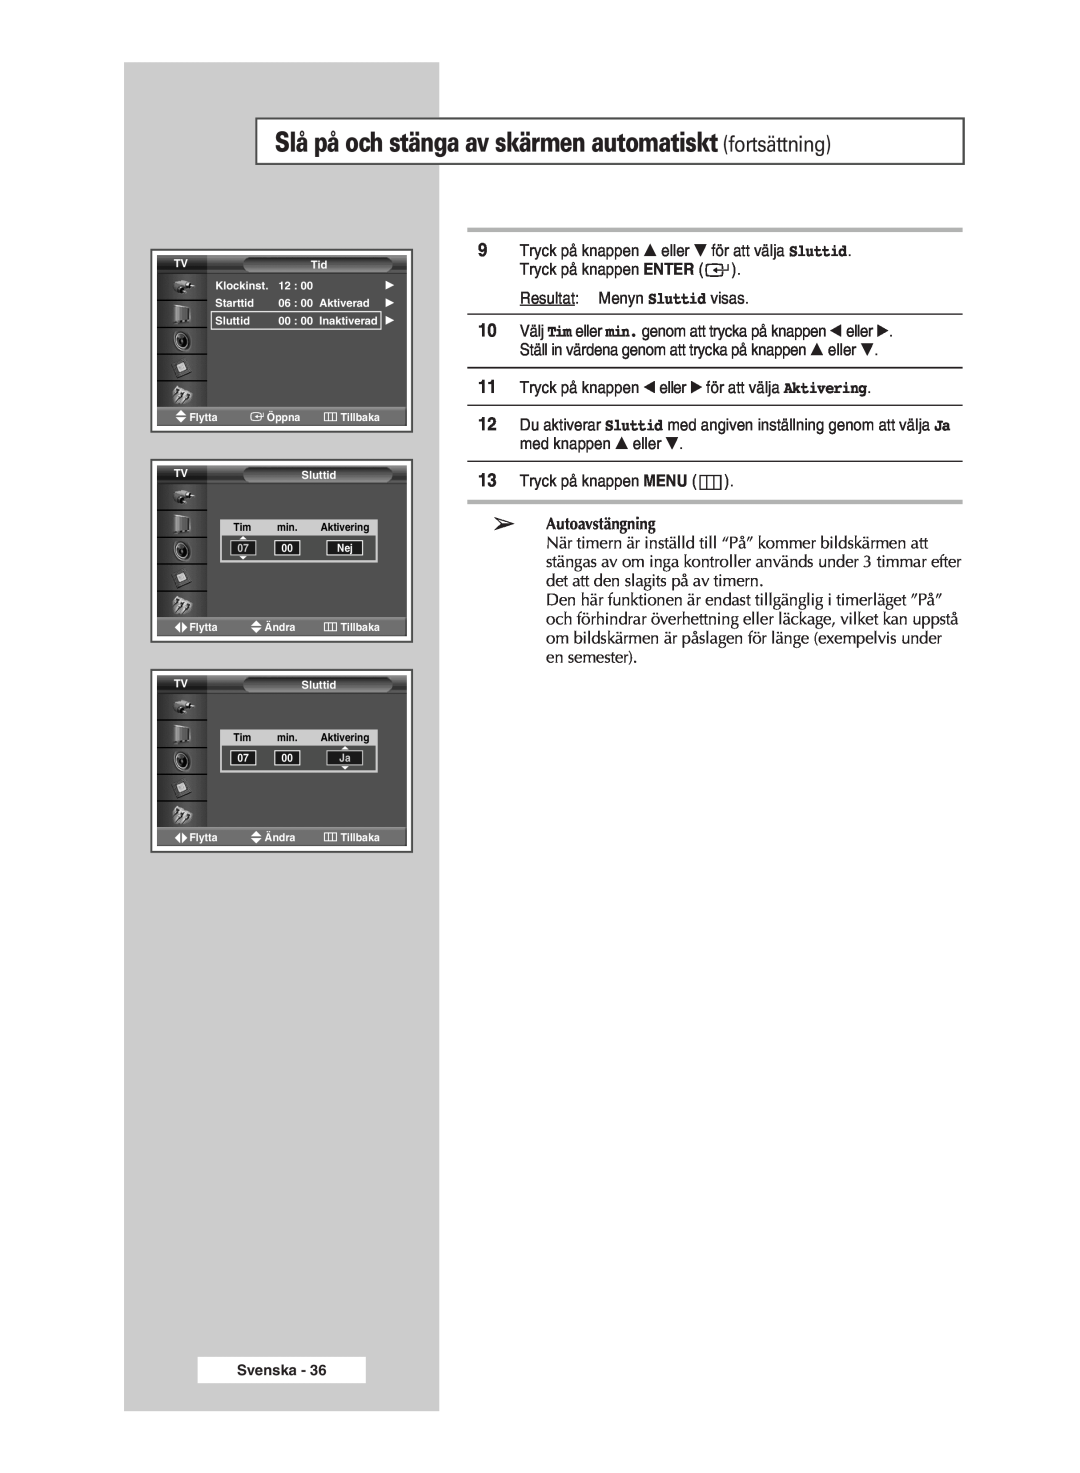 Samsung PPM42M5SSX/EDC, PPM42M5HSX/EDC manual Slå på och stänga av skärmen automatiskt fortsättning, Autoavstängning 